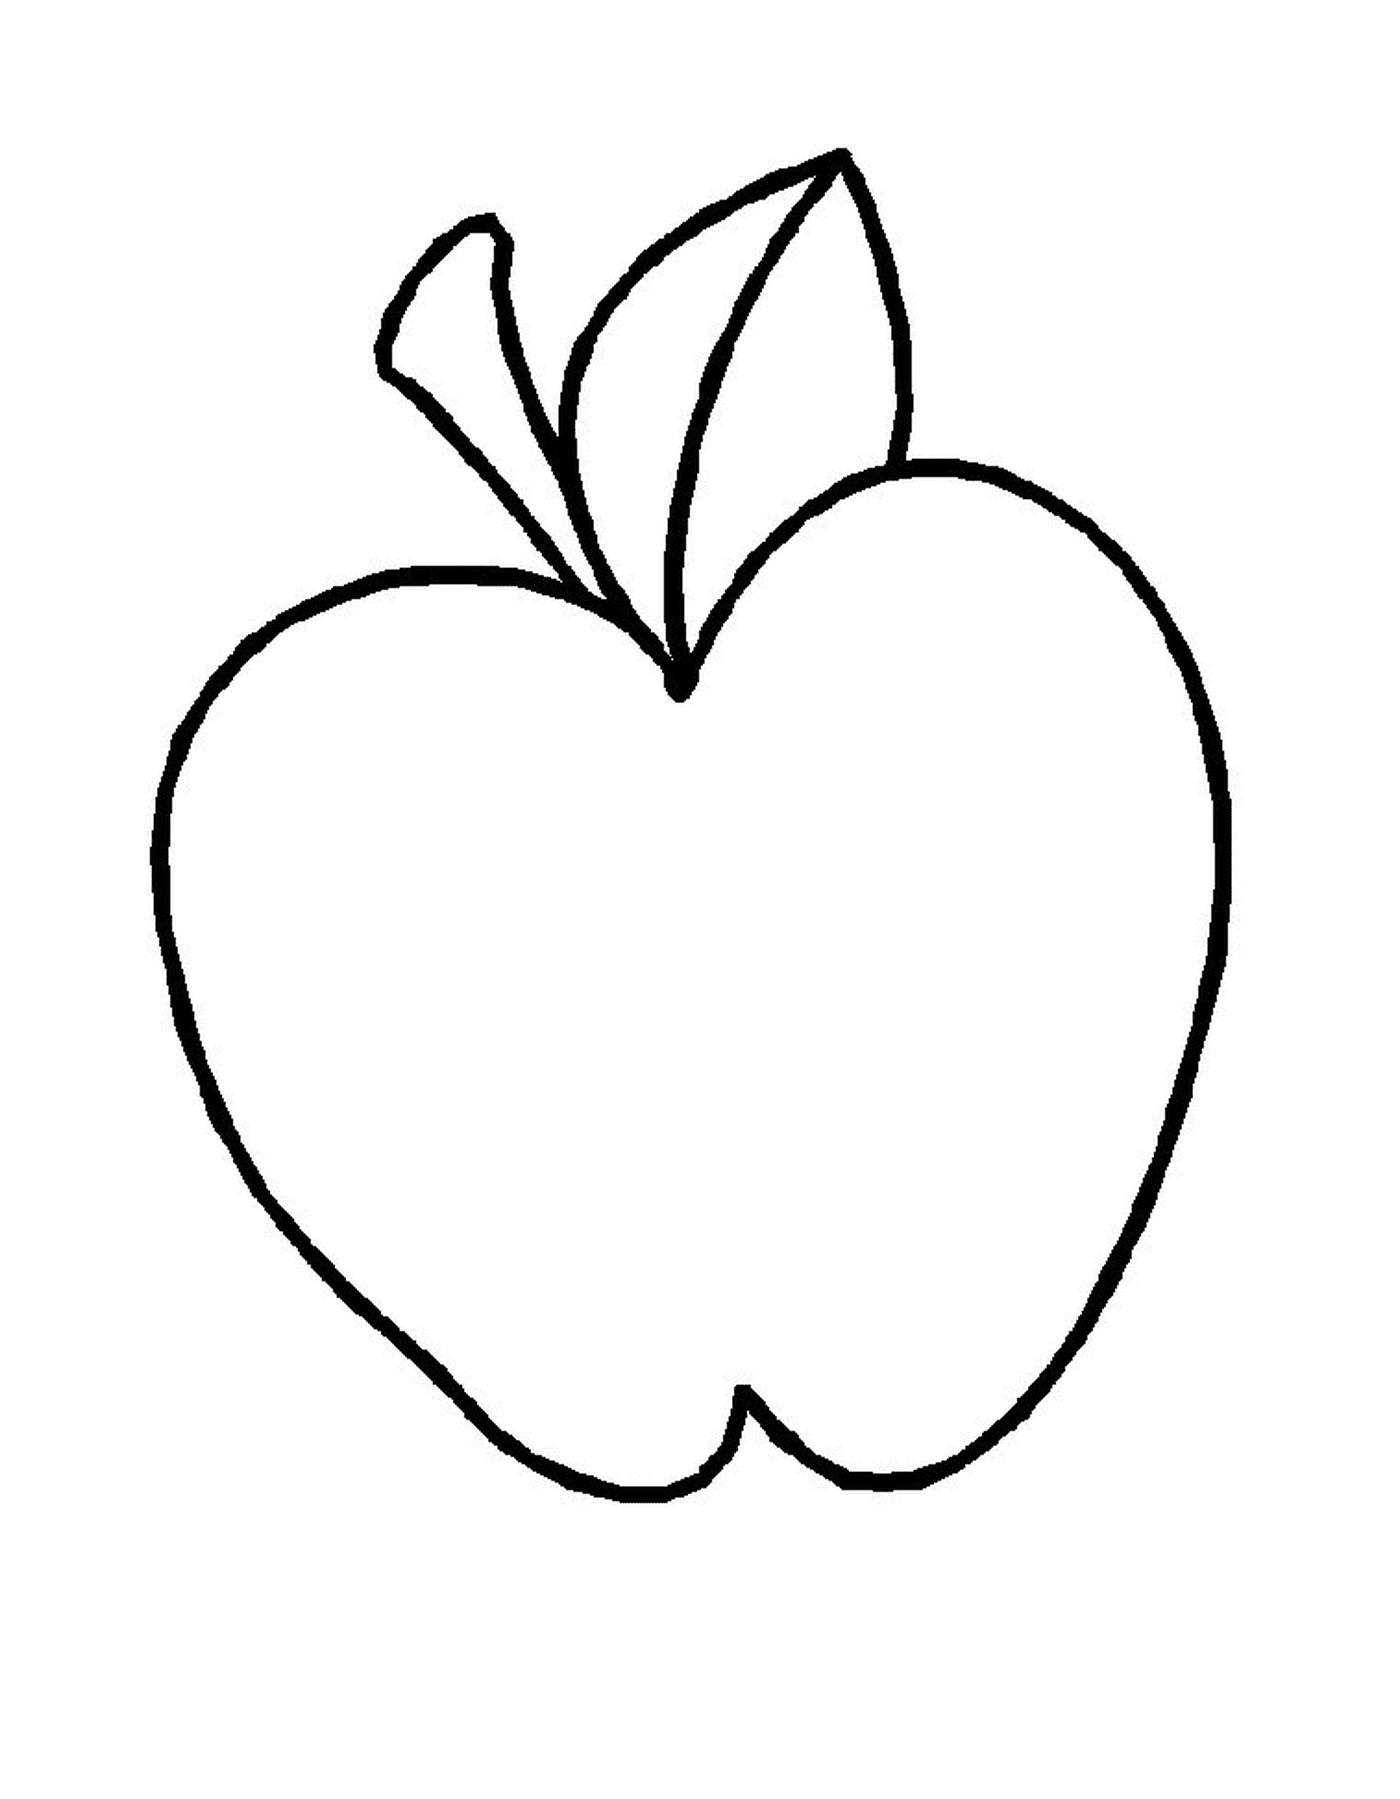  kriechender Apfel gezeichnet 